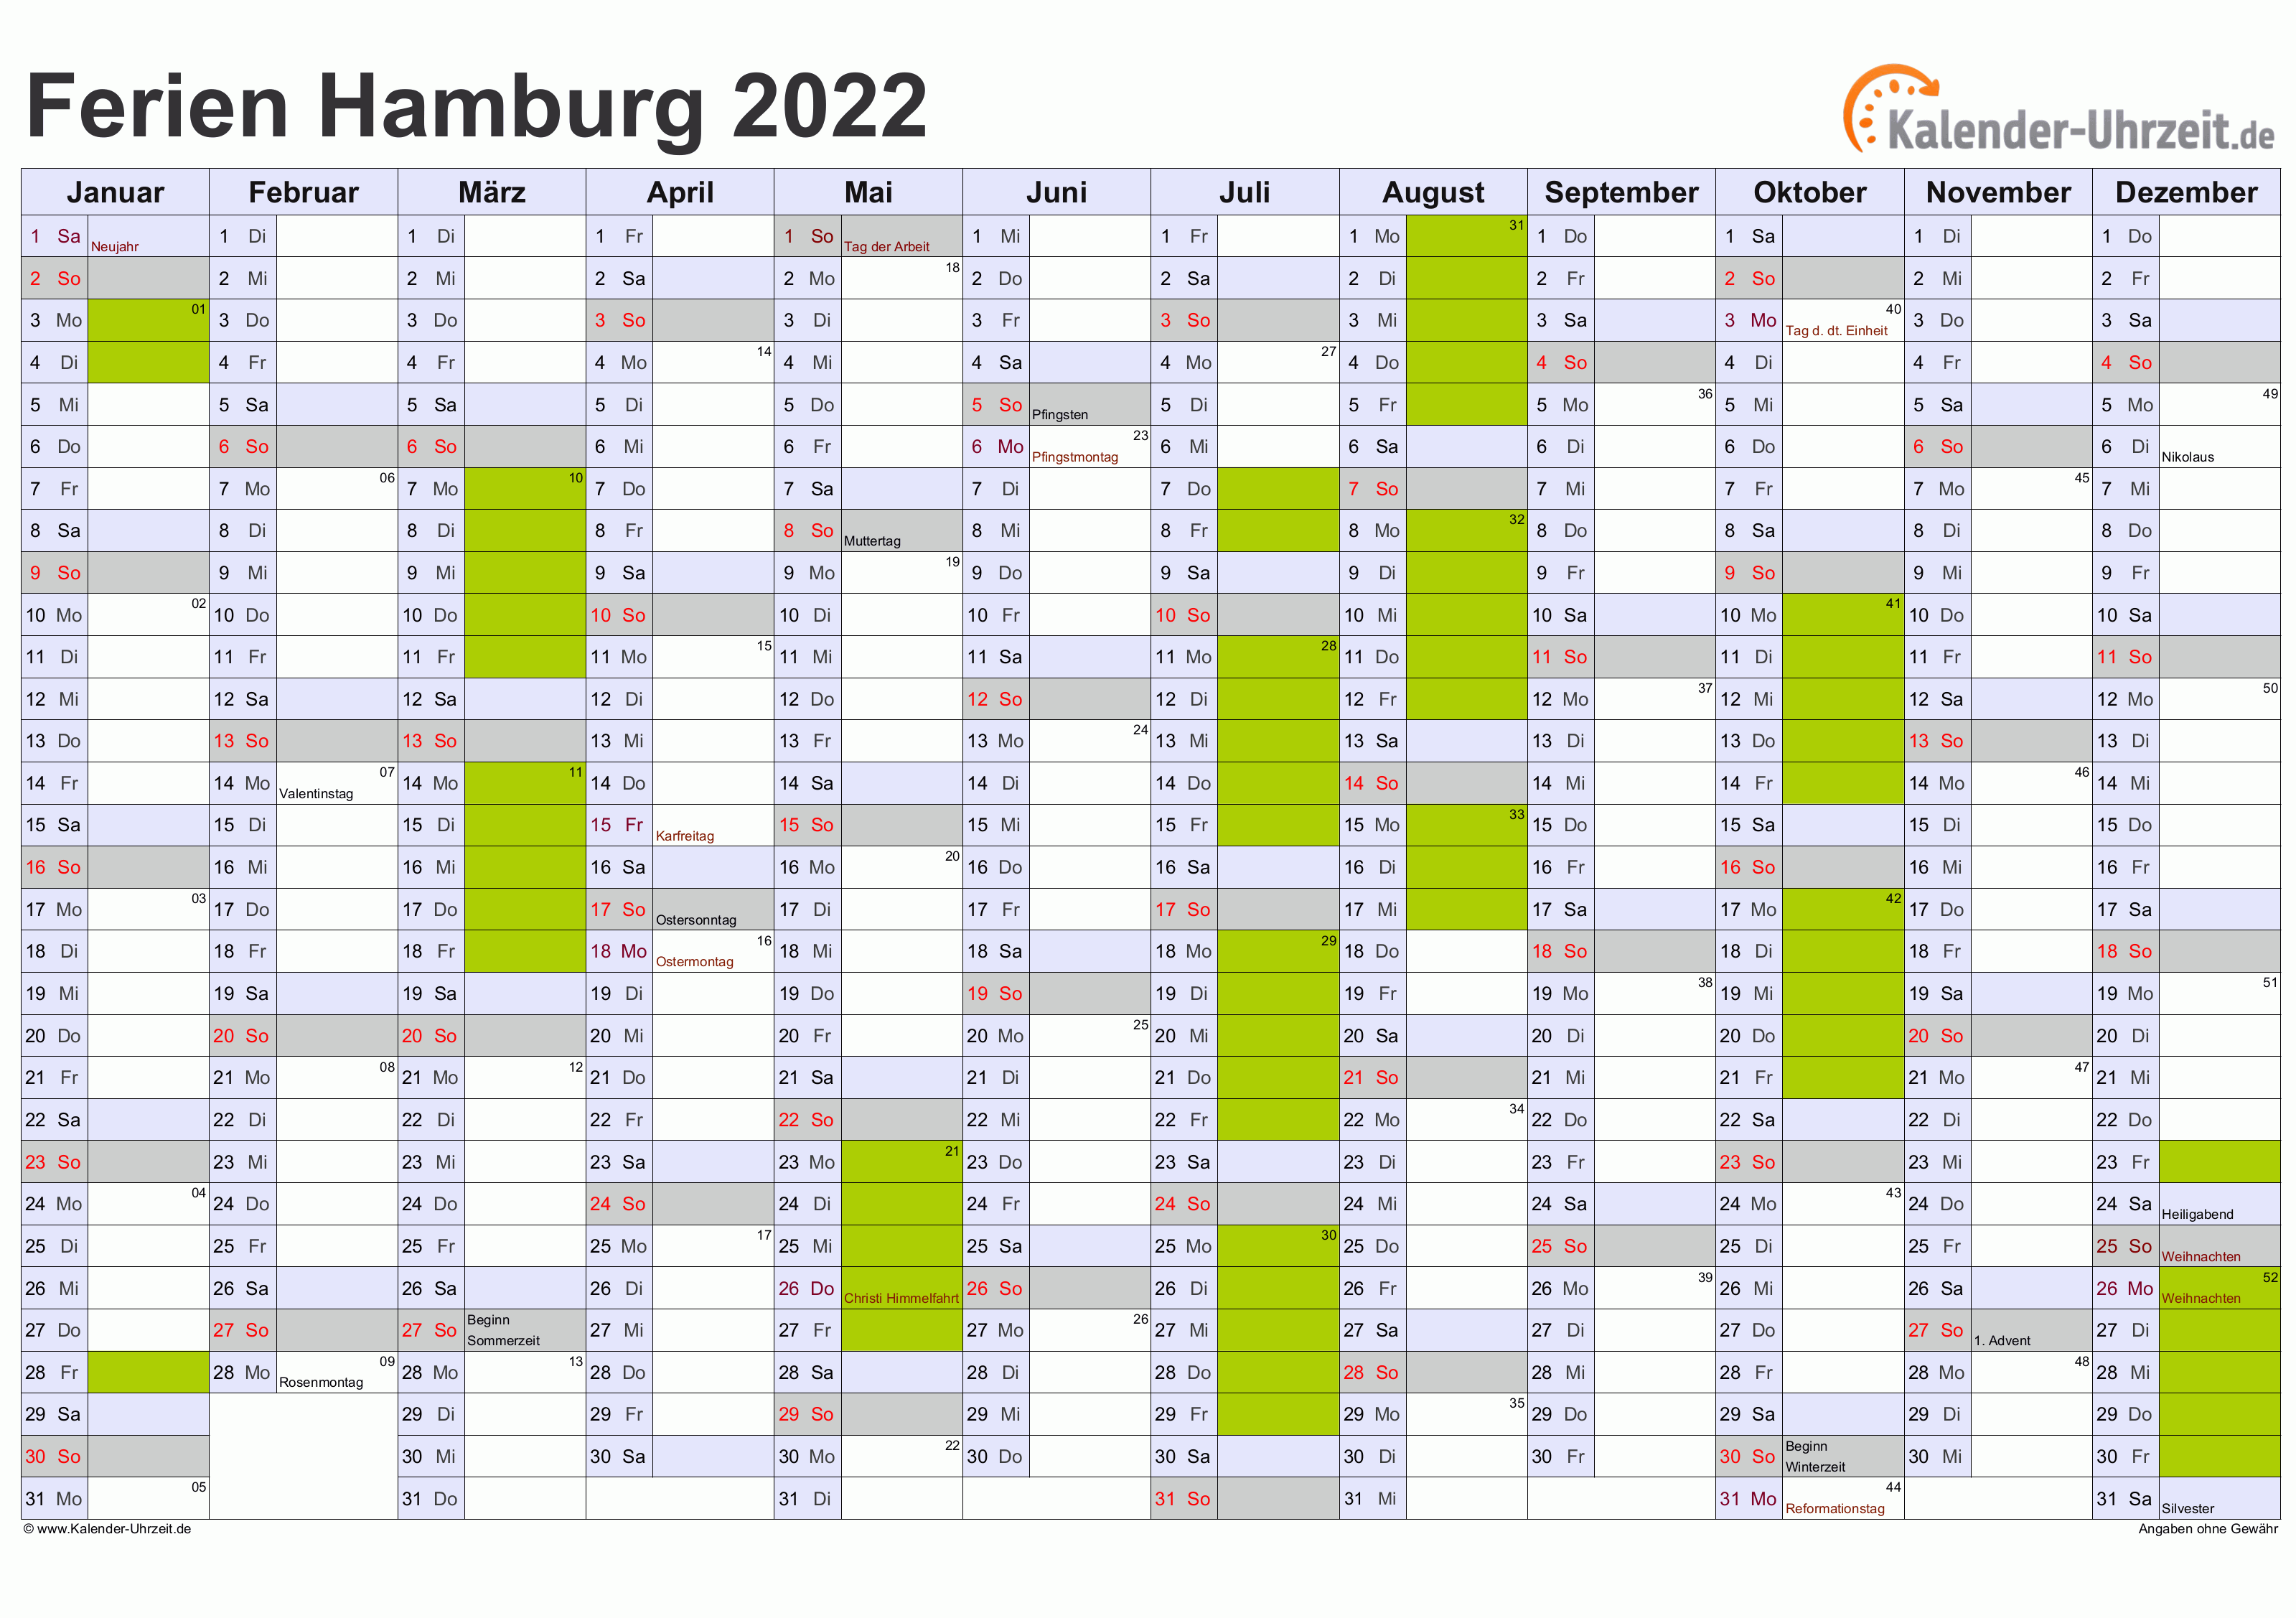 Ferien Hamburg 2022 - Ferienkalender zum Ausdrucken